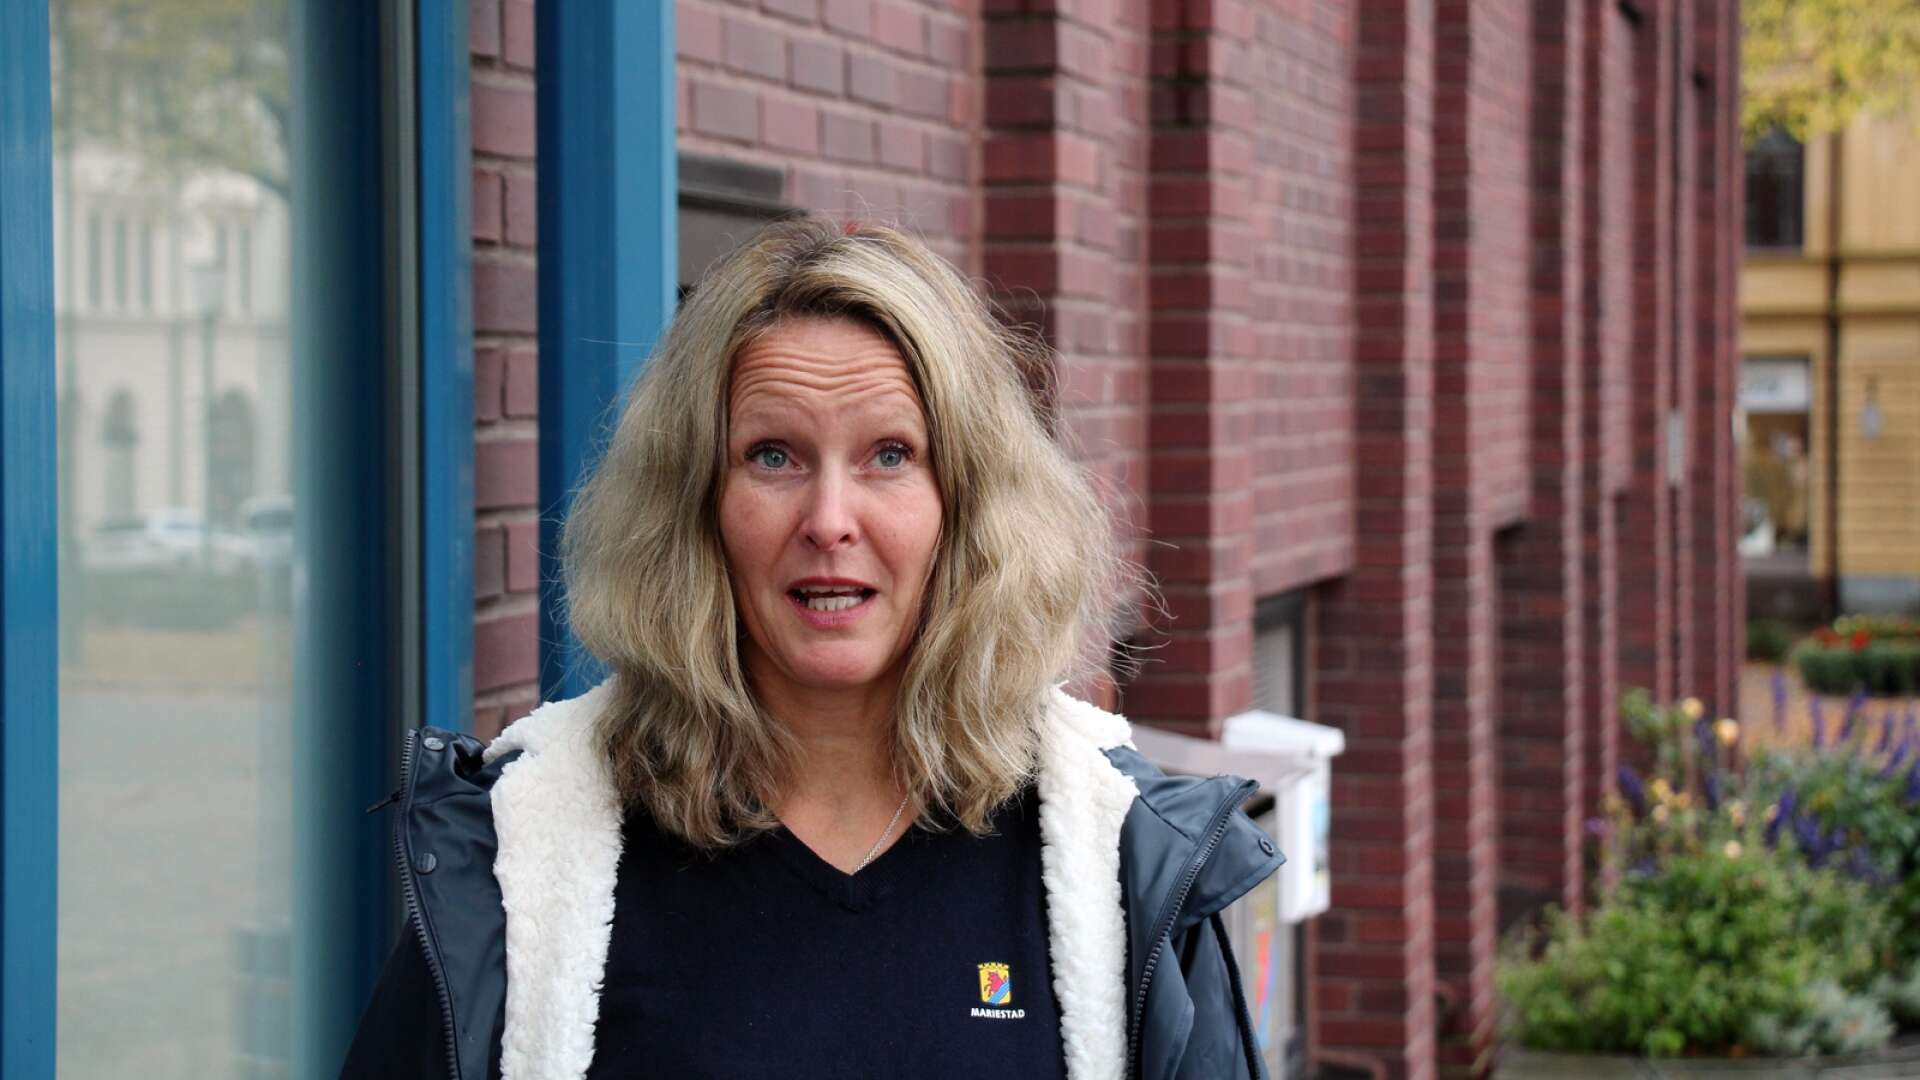 Näringslivschef Susanné Wallner tog emot omställningsstöd och pension på totalt 561 163 kronor från Region Jämtland och Härjedalen samtidigt som hon hade en månadslön om 49 000 kronor från Mariestads kommun. Det avslöjar nu tidningen GT.